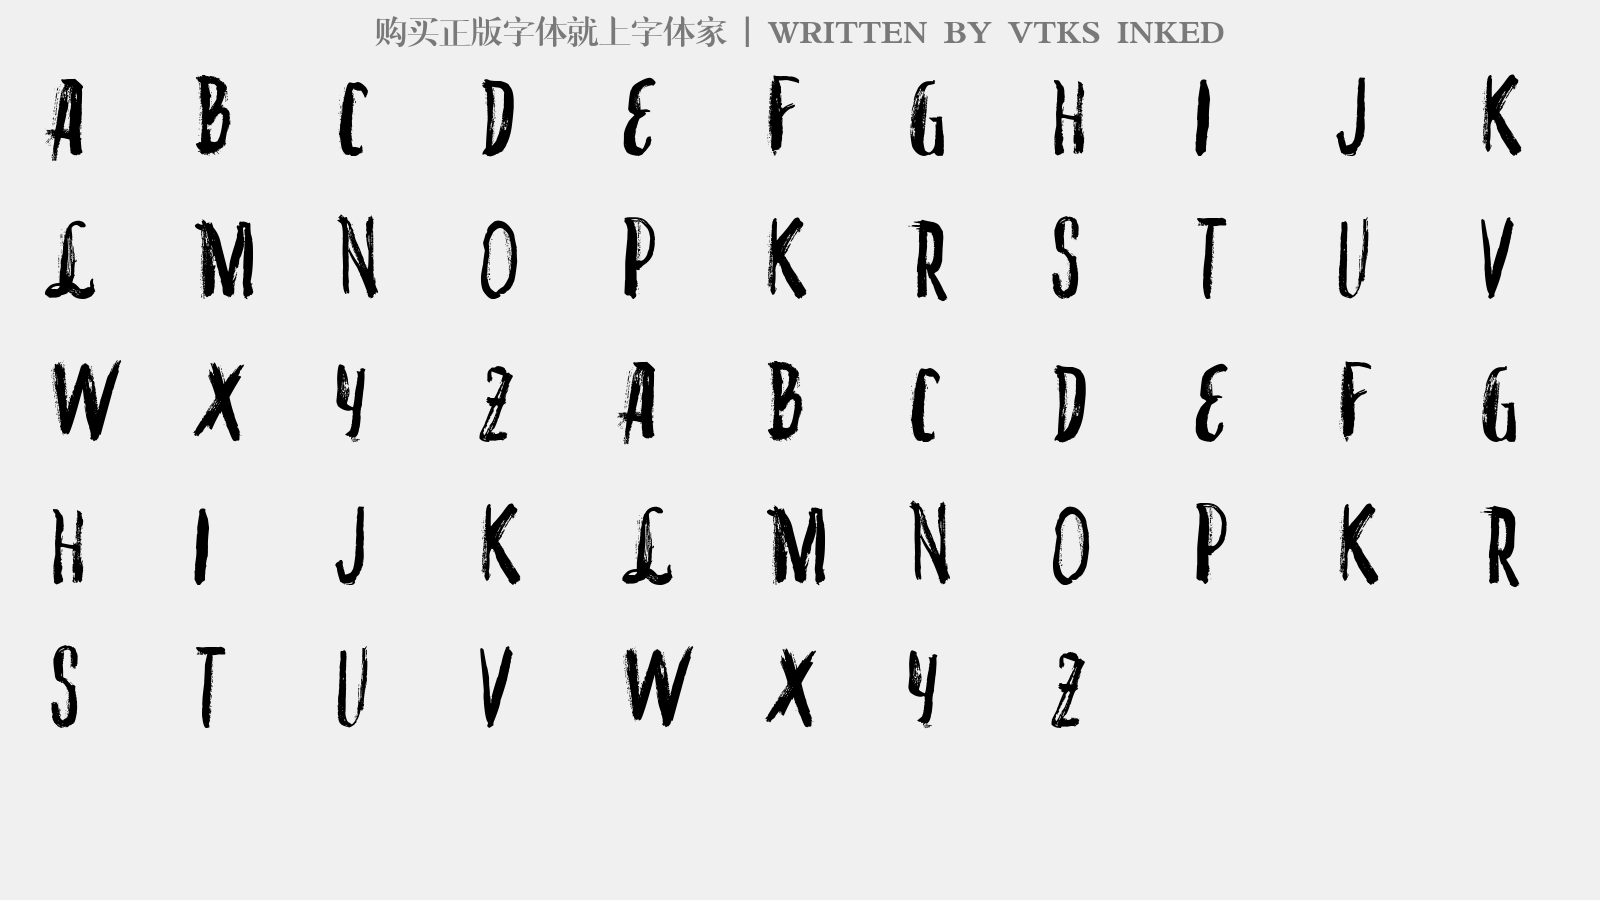 VTKS INKED - 大写字母/小写字母/数字